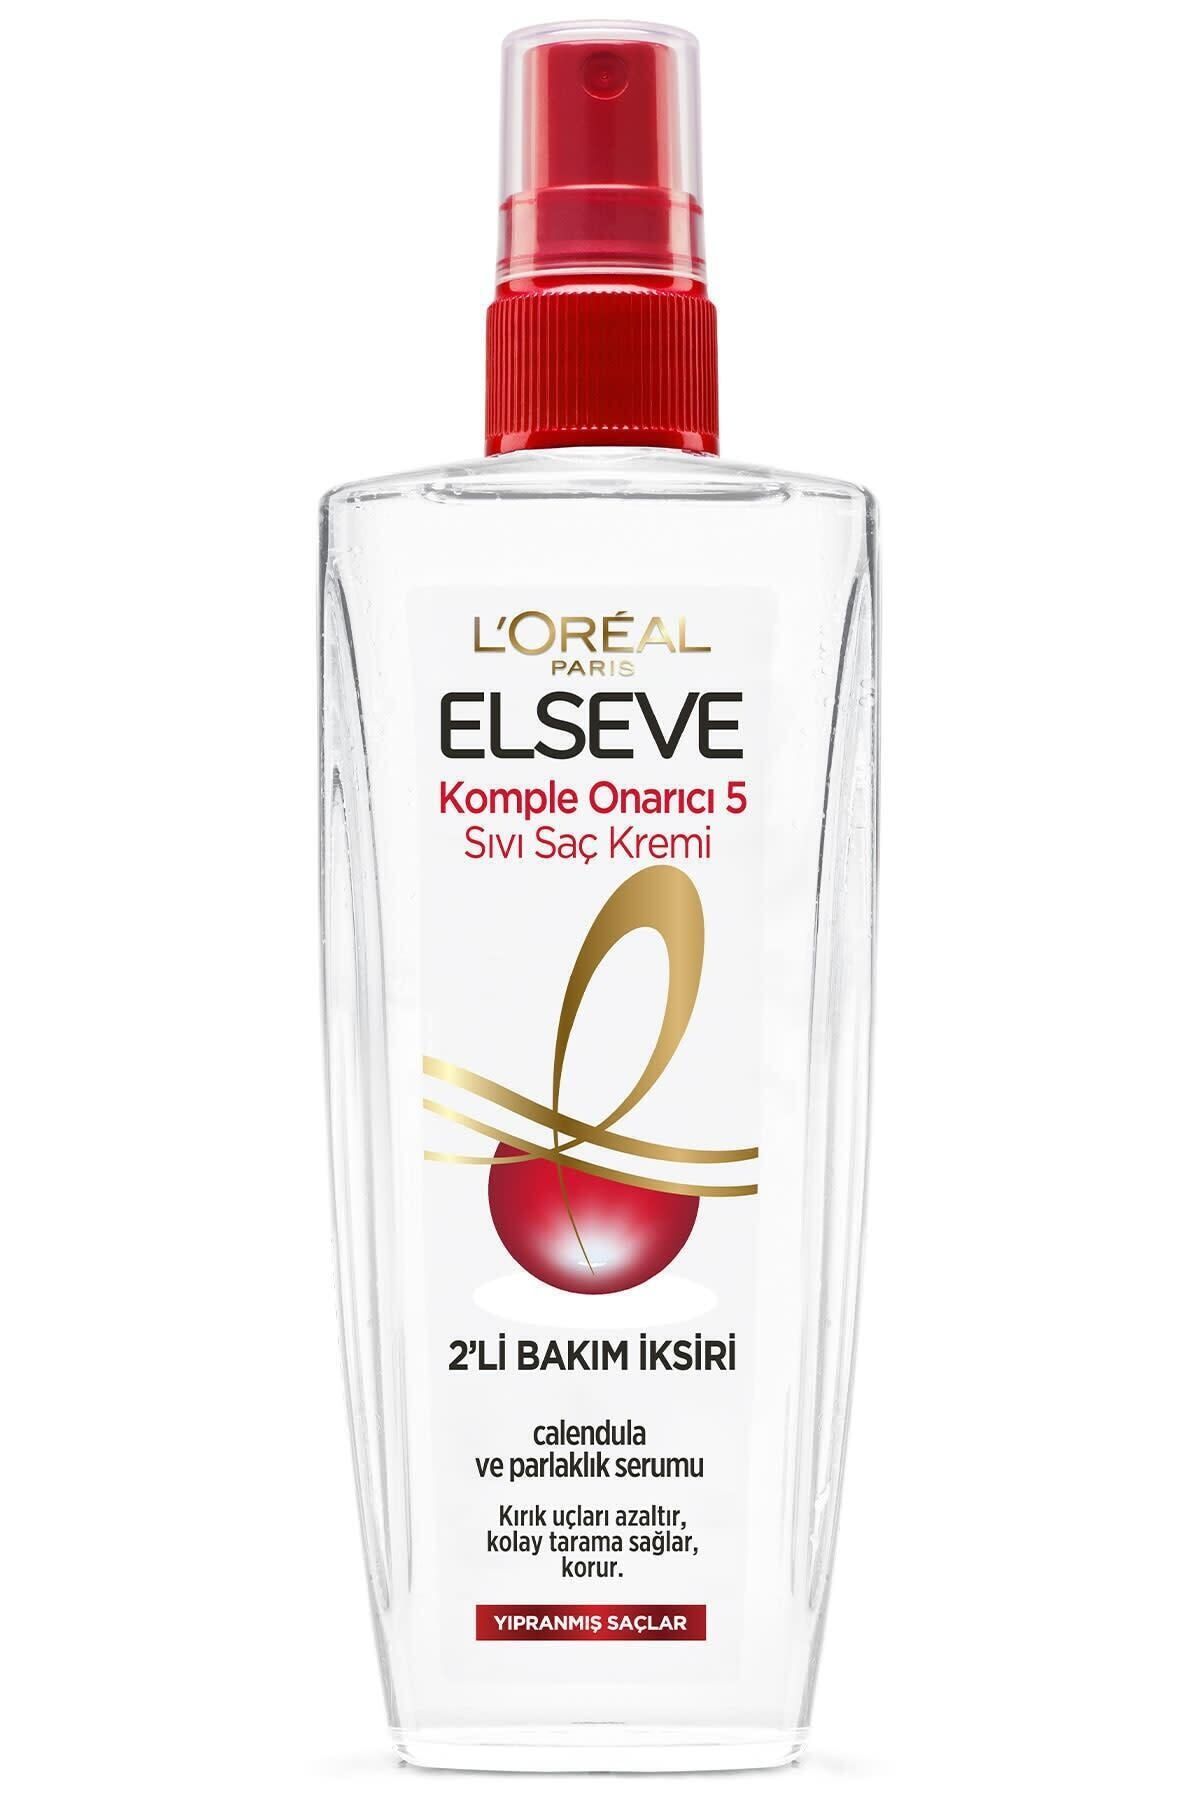 Elseve L'oréal Paris Komple Onarıcı 5 Ekspres Bakım Spreyi 200 Ml